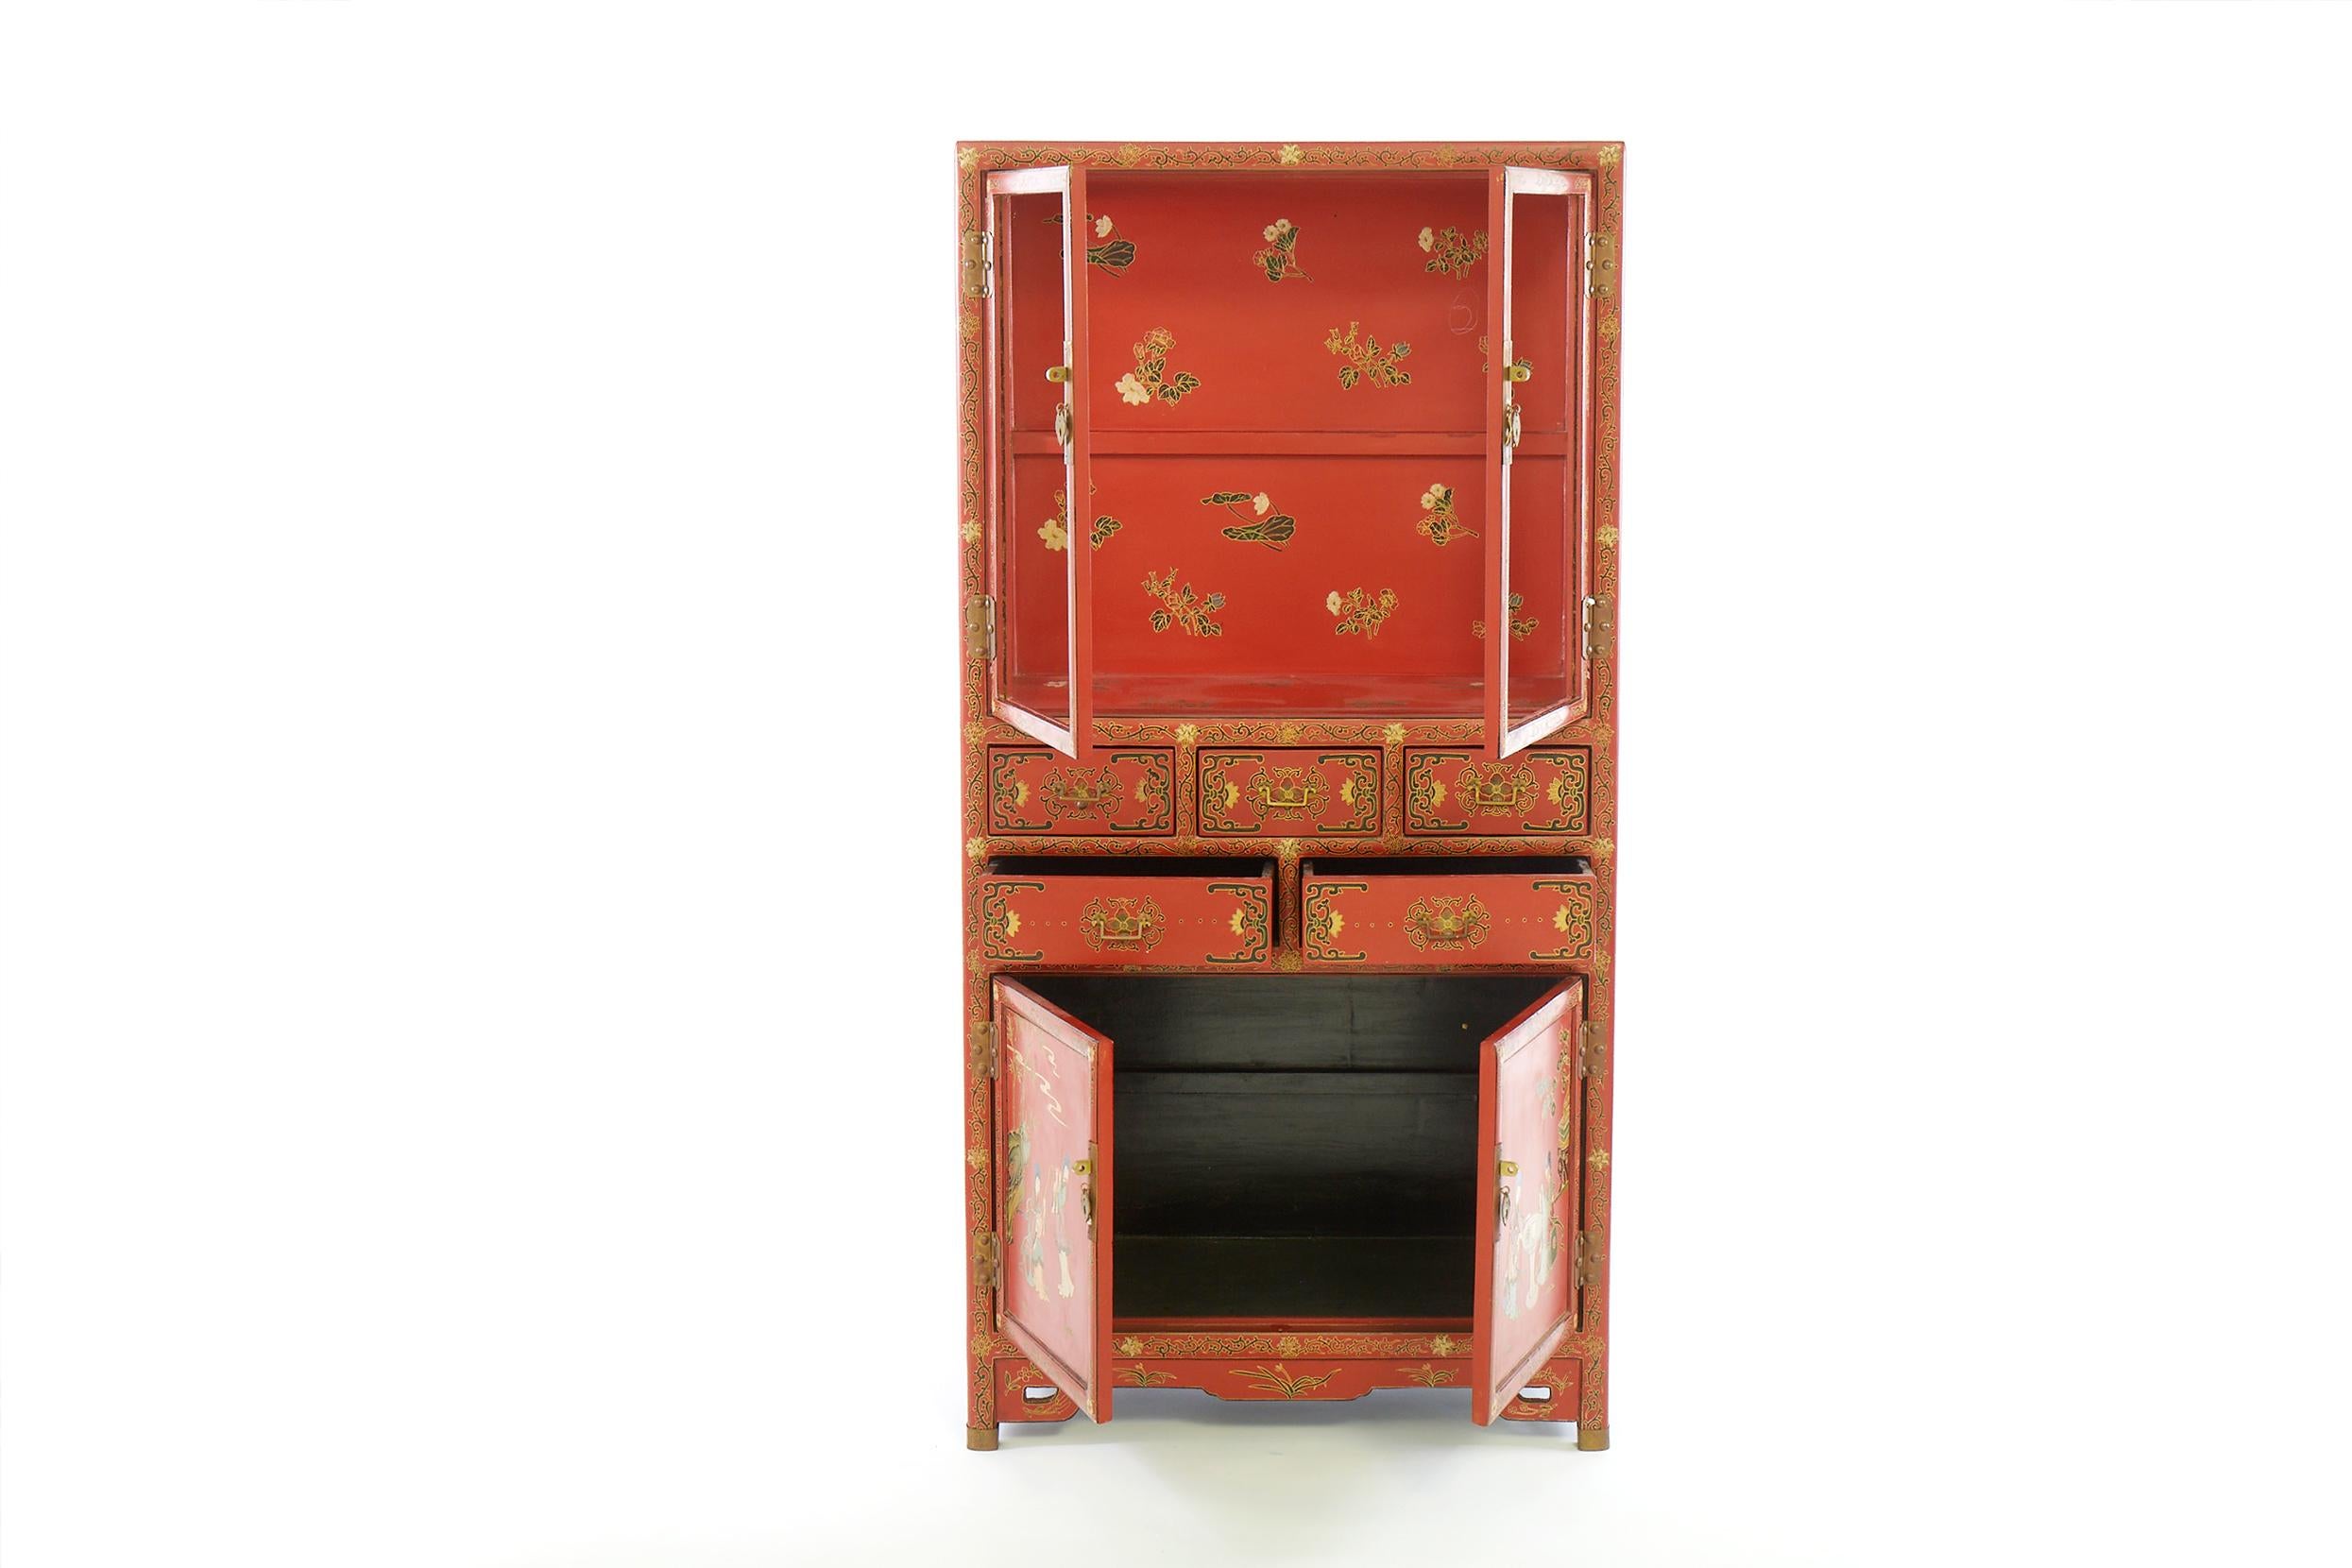 Vitrine / armoire laquée chinoise de style chinois peint à la main au milieu du 20e siècle. Le meuble comporte deux tiroirs supérieurs vitrés, cinq tiroirs centraux, deux portes inférieures et des ferrures en laiton. L'armoire est livrée avec une